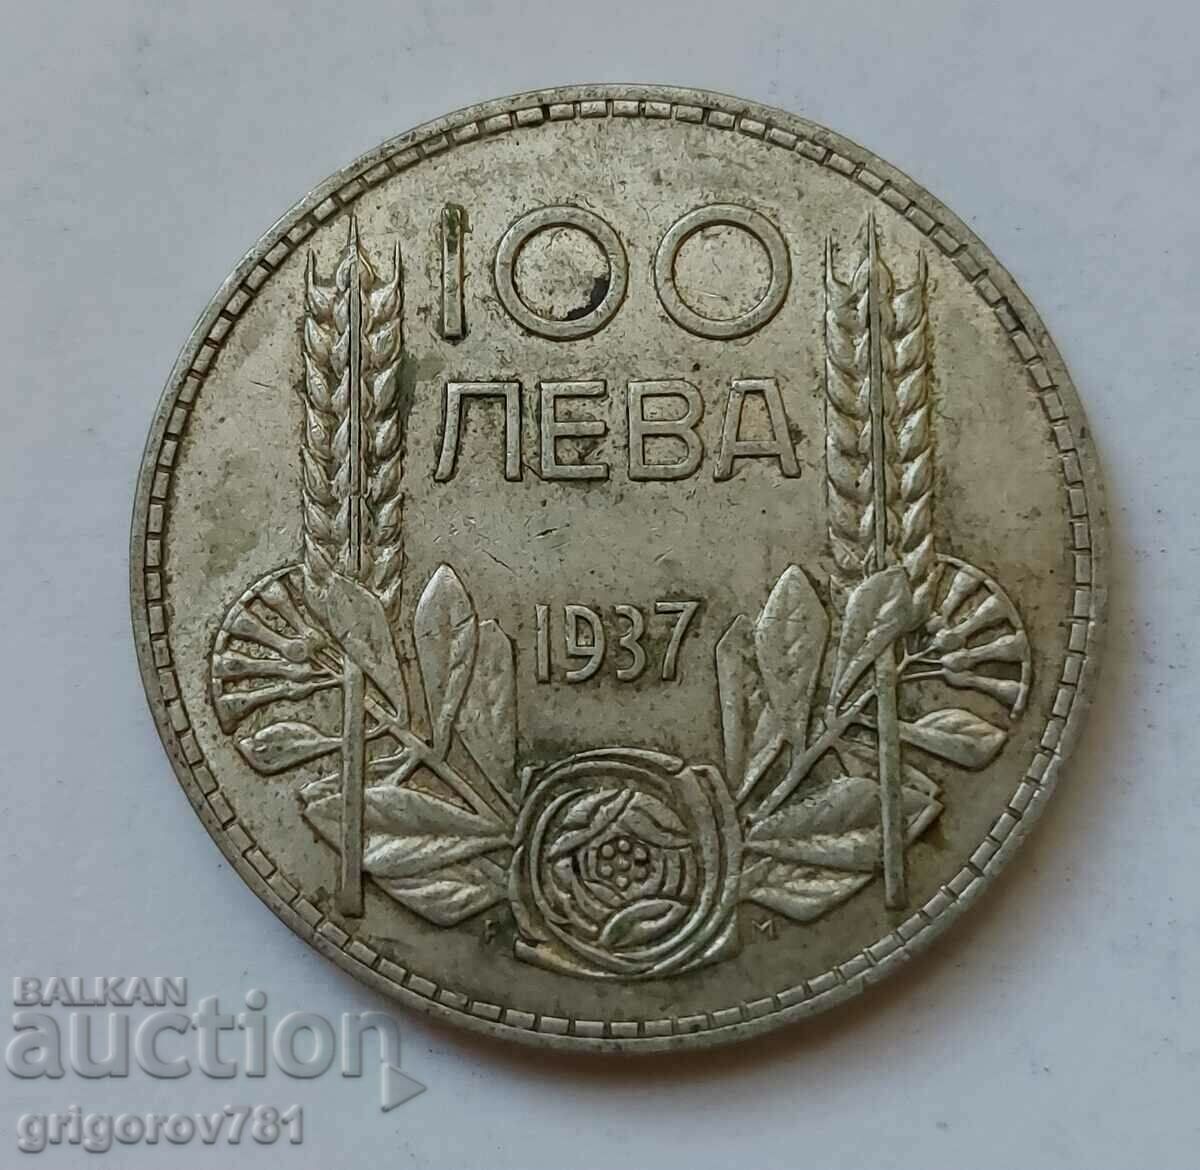 100 leva argint Bulgaria 1937 - monedă de argint #91